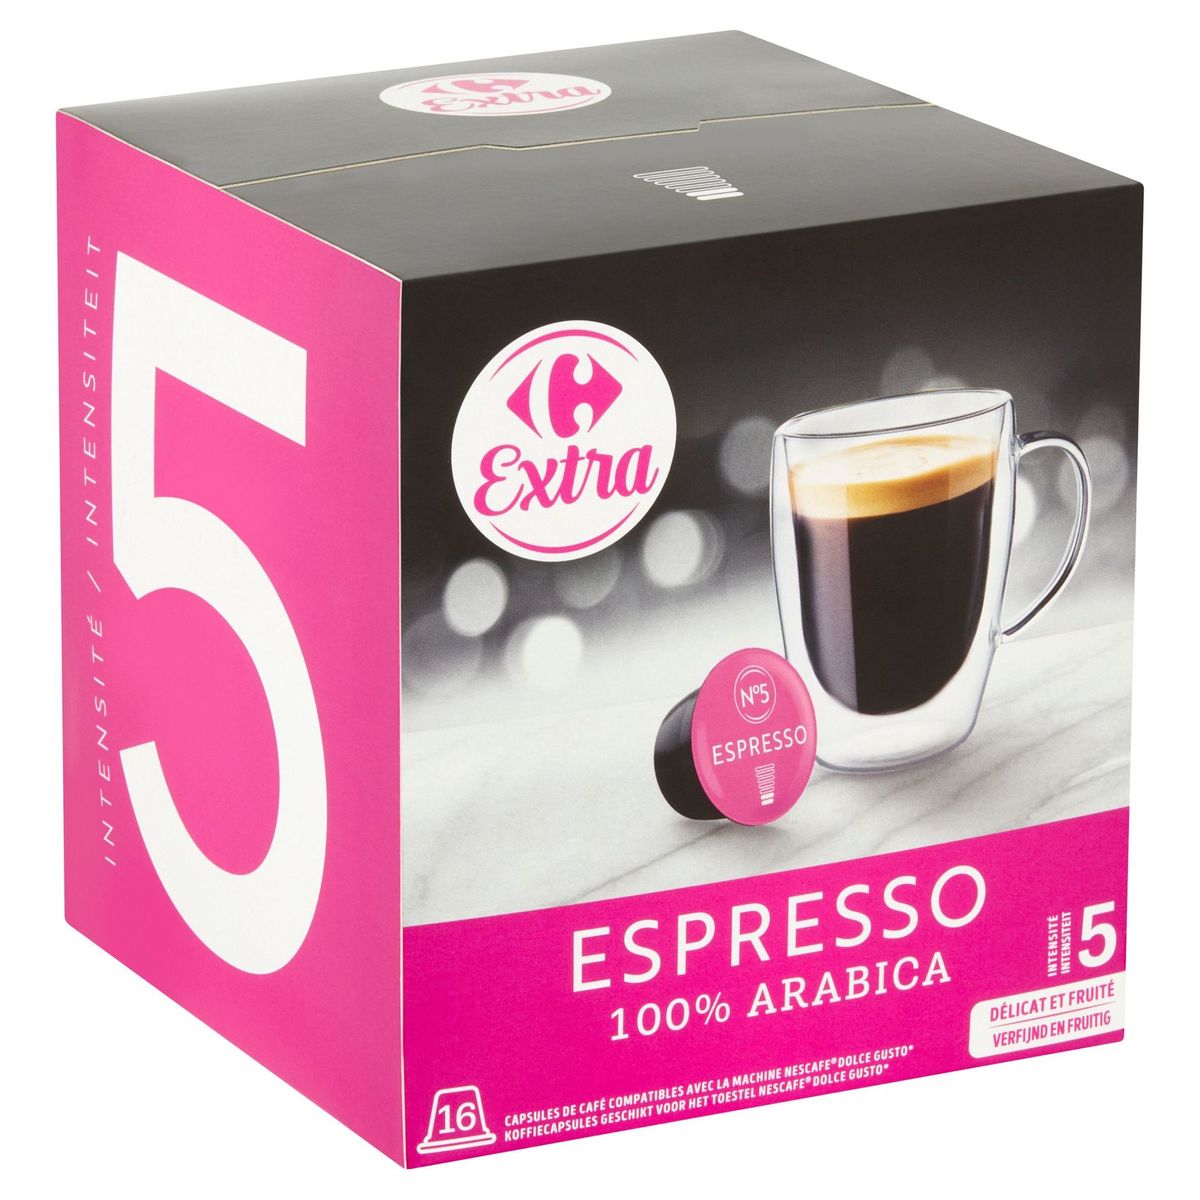 Carrefour Extra Espresso 16 x 7 g